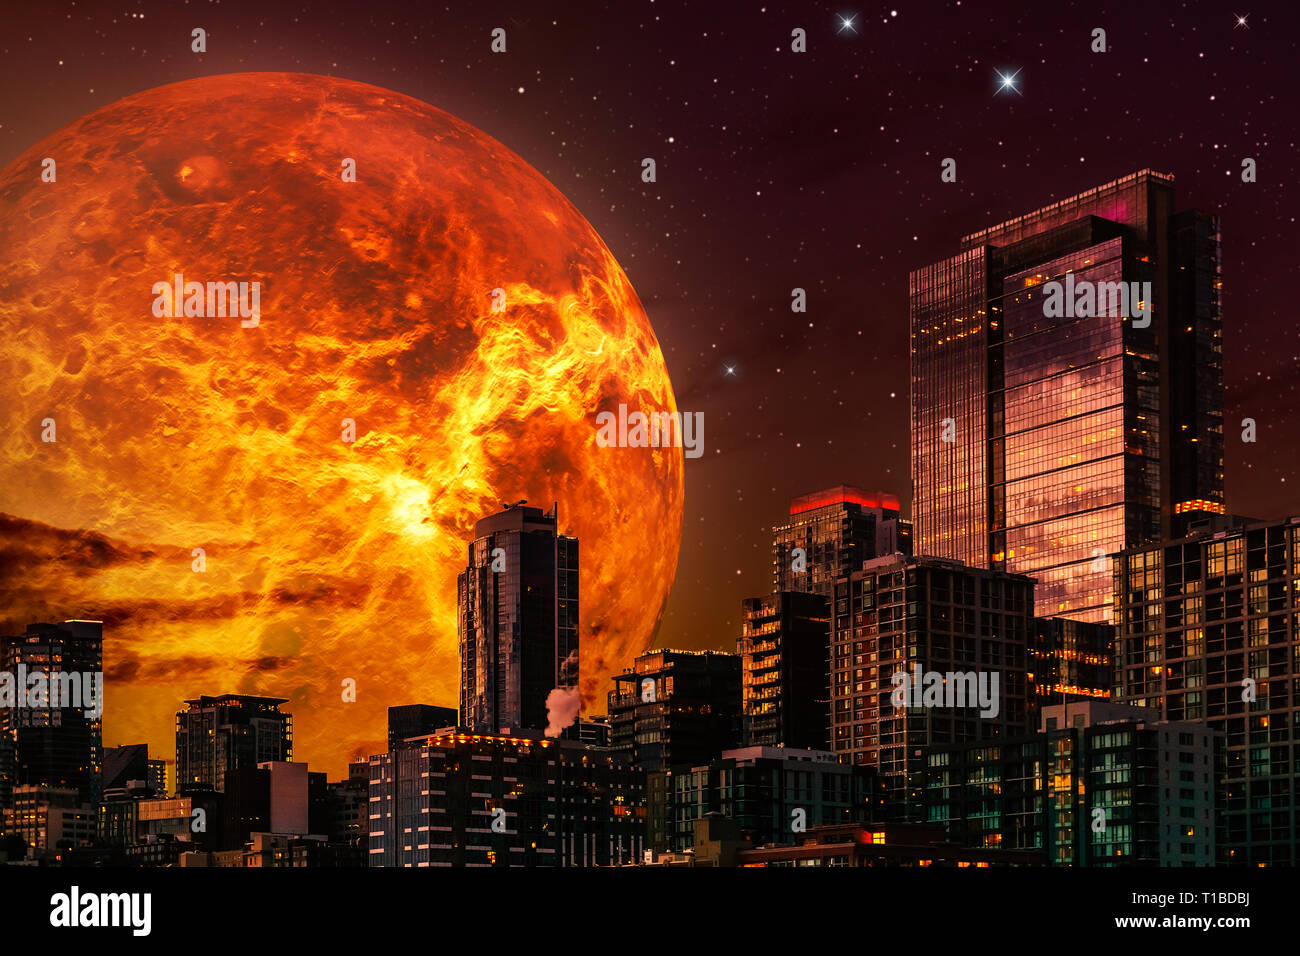 Sci-fi ilustración del paisaje urbano. Skyline en la noche con el planeta gigante o sun en el fondo y un cielo estrellado. Ilustración compuesto con 3D rendering Foto de stock